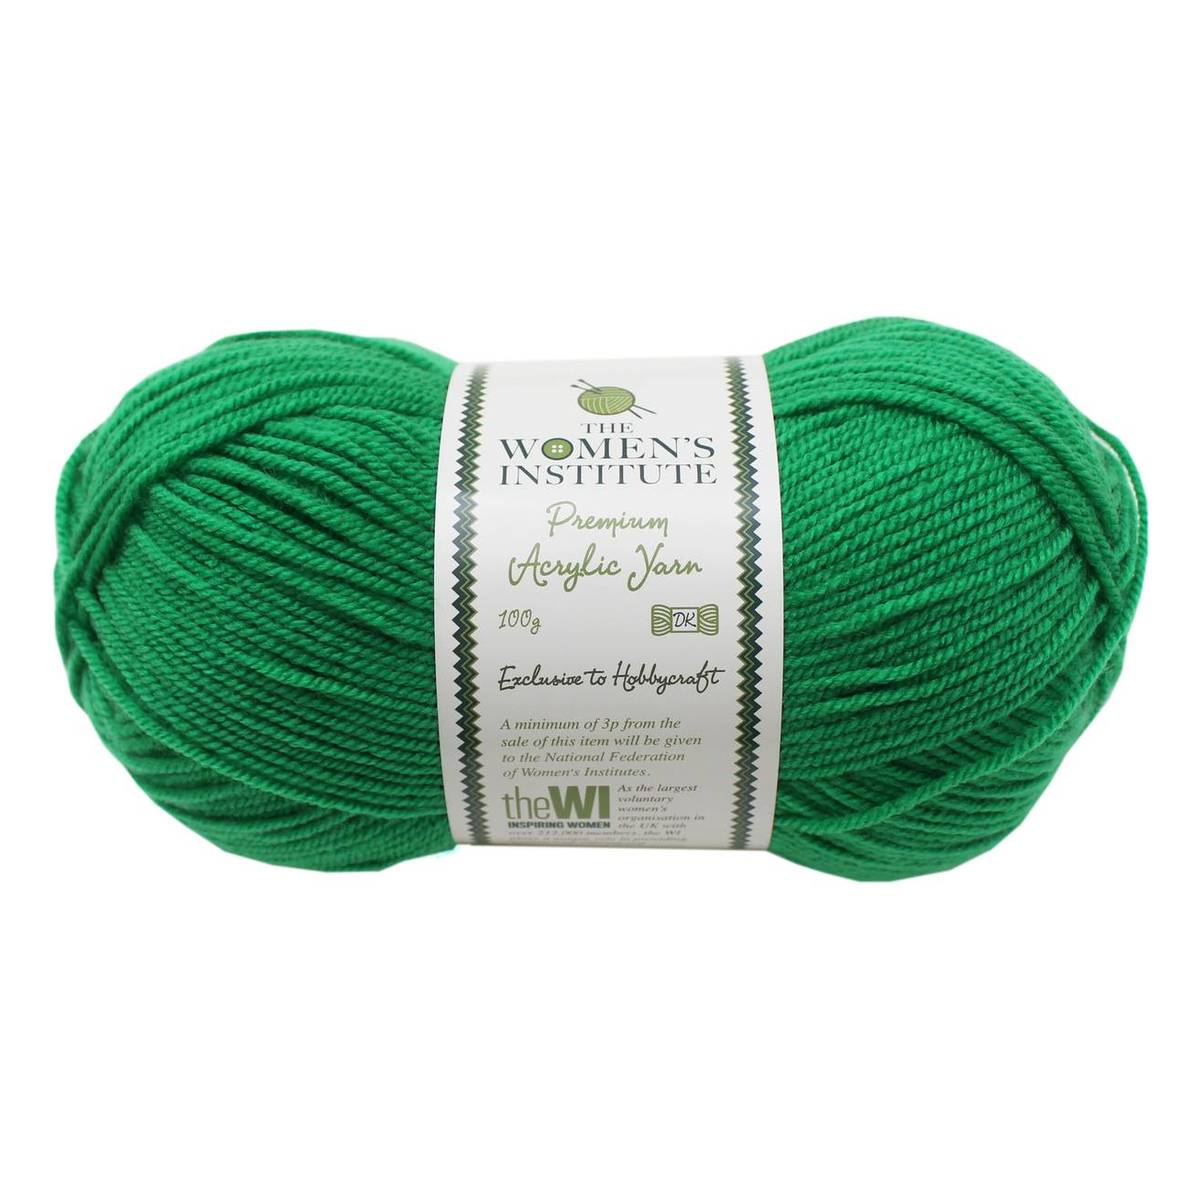 Women's Institute Green Premium Acrylic Yarn 100g